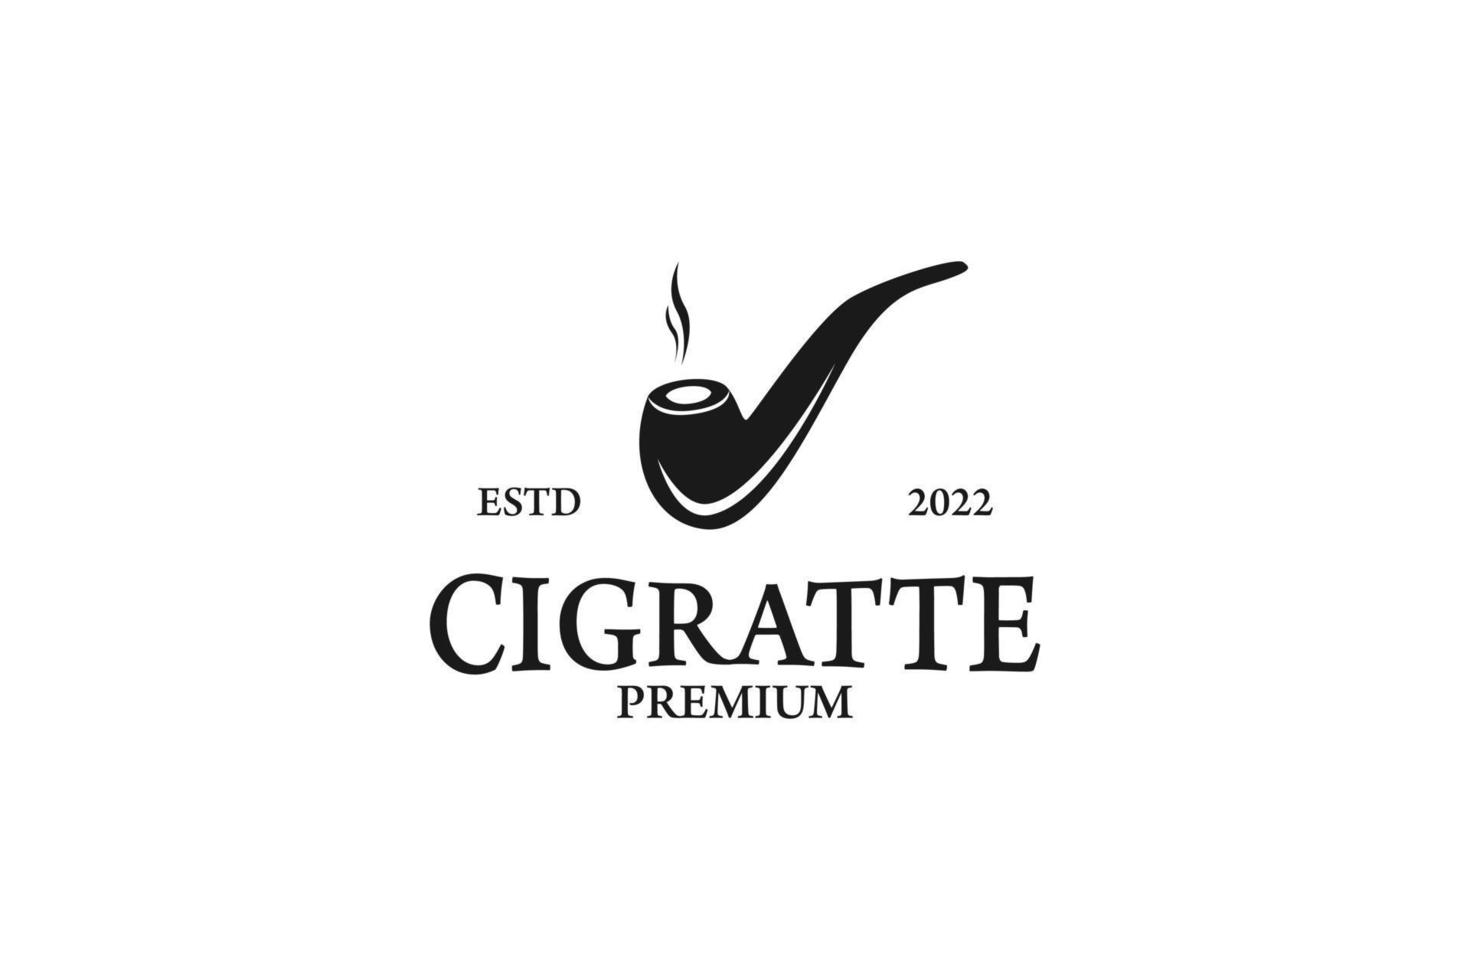 sigaretta piatta industria fabbrica logo design grafico vettoriale simbolo icona illustrazione idea creativa